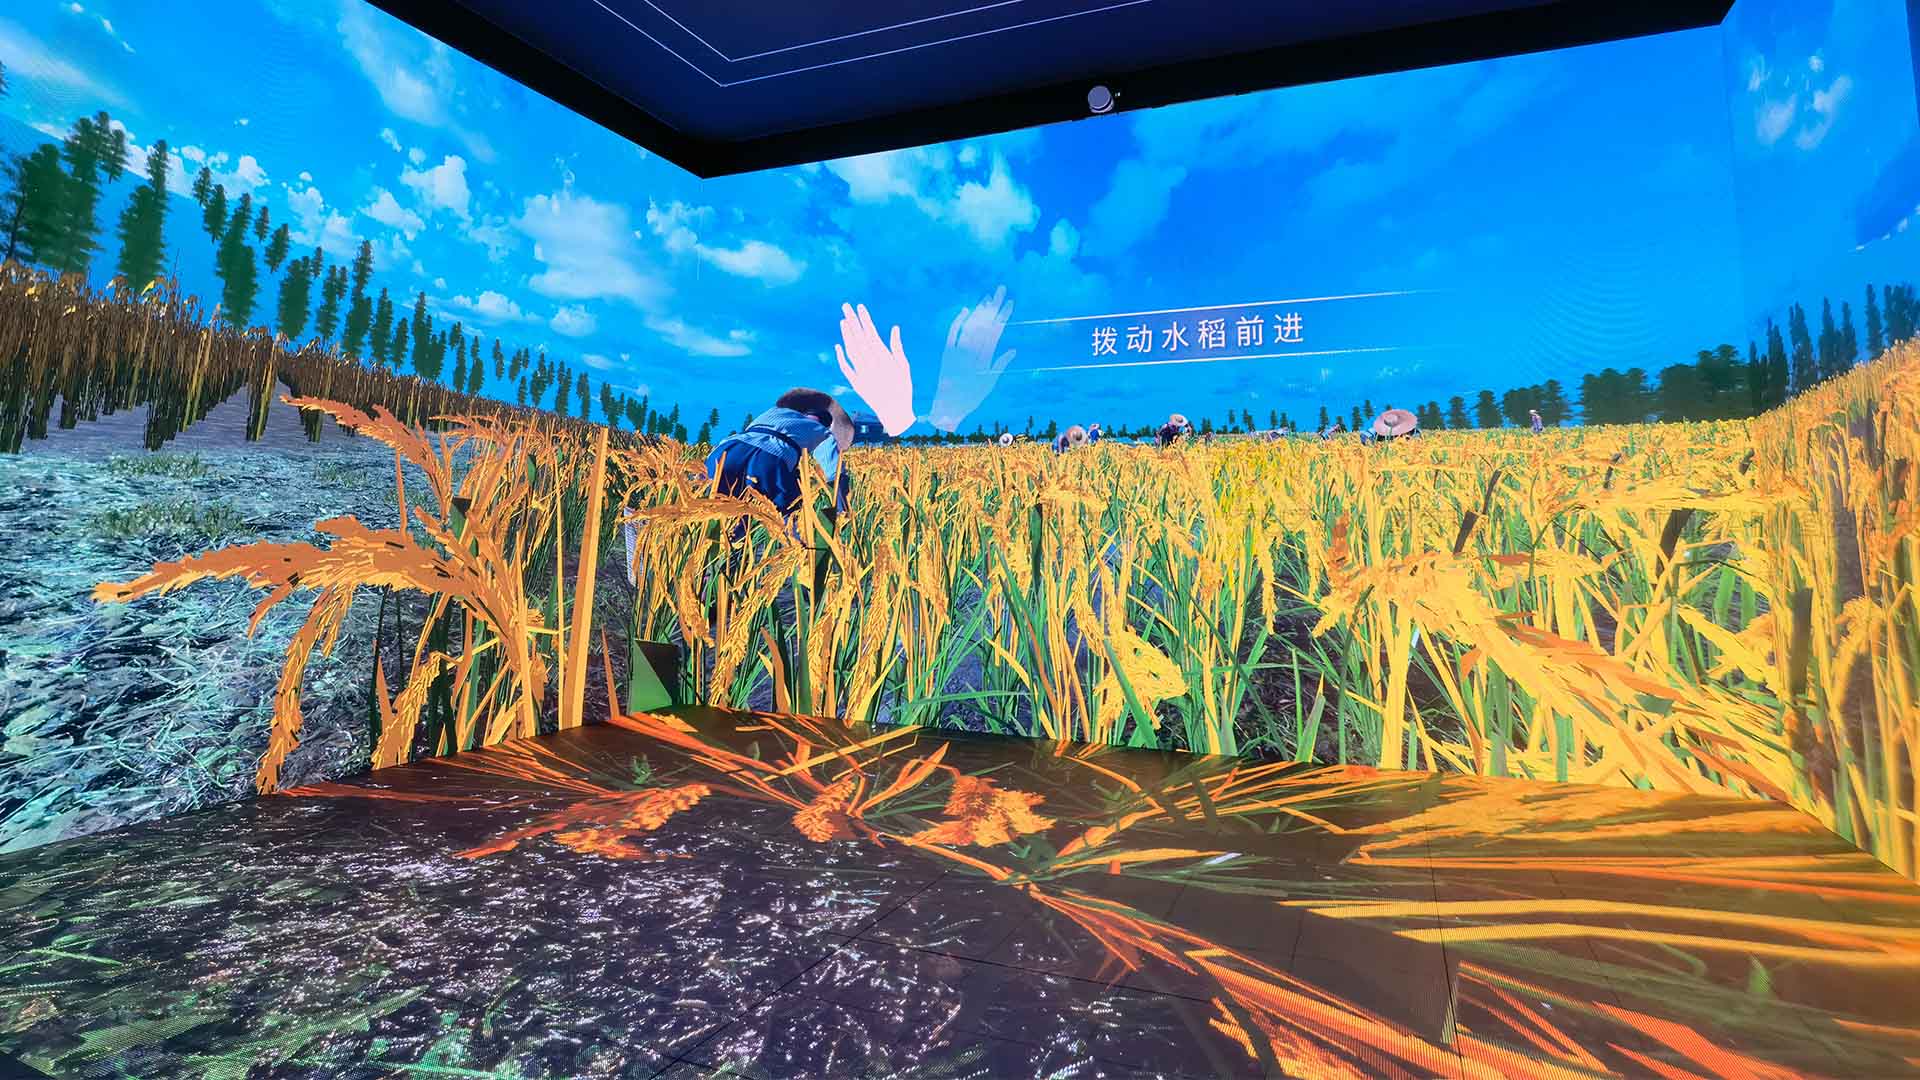 阳江农业科技多媒体展厅